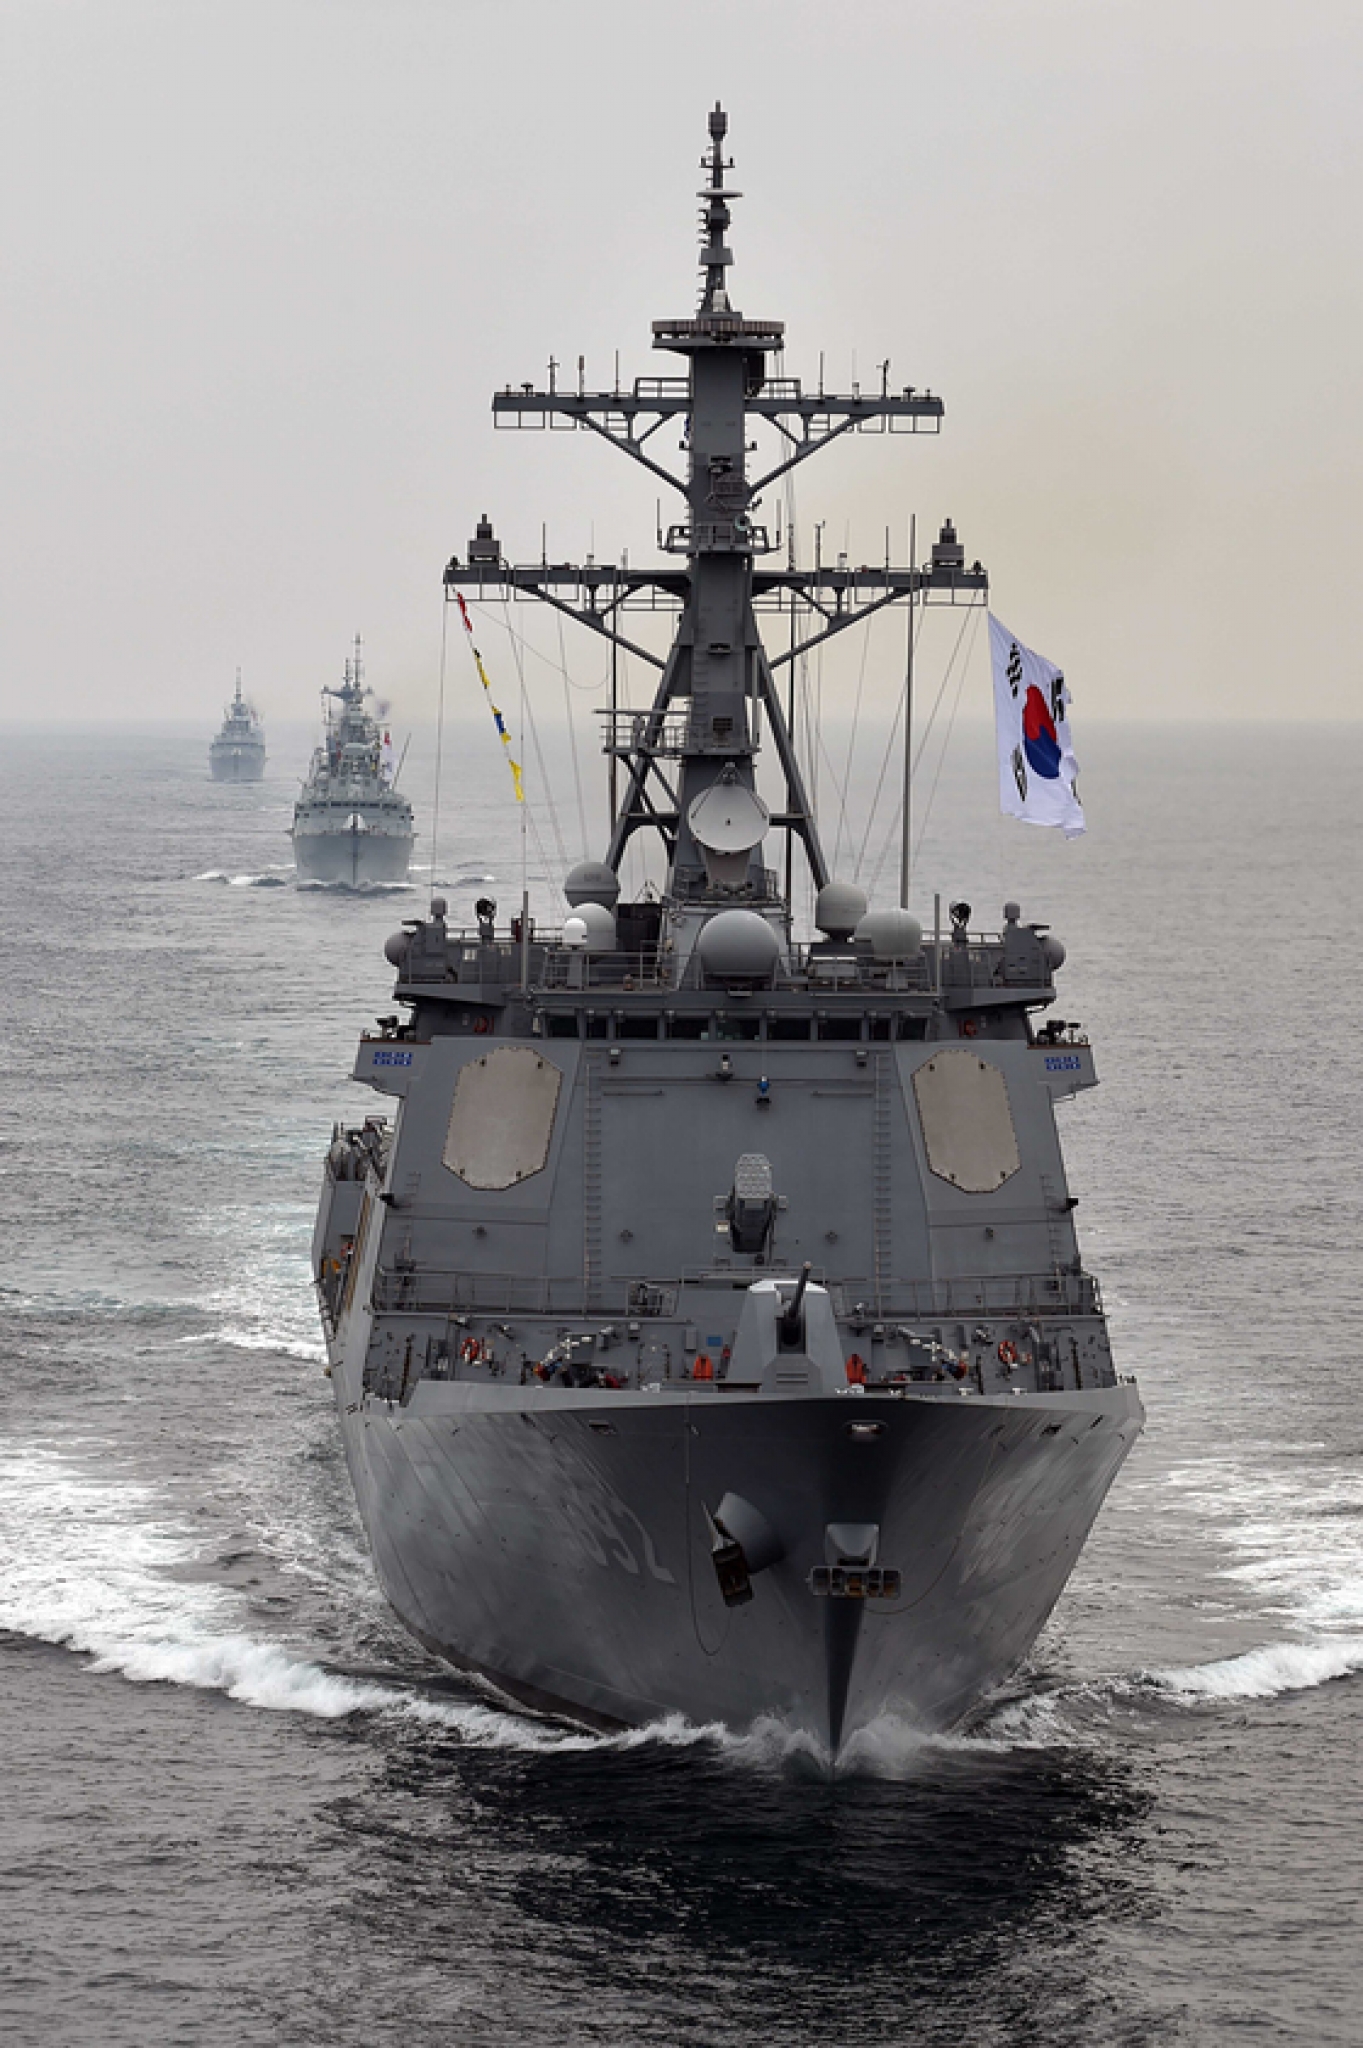 지난 6월23일 제주 인근 해상에서 한국·캐나다 해군이 연합해상기동훈련을 펼치고 있다. 사진은 율곡이이함. /사진=뉴스1